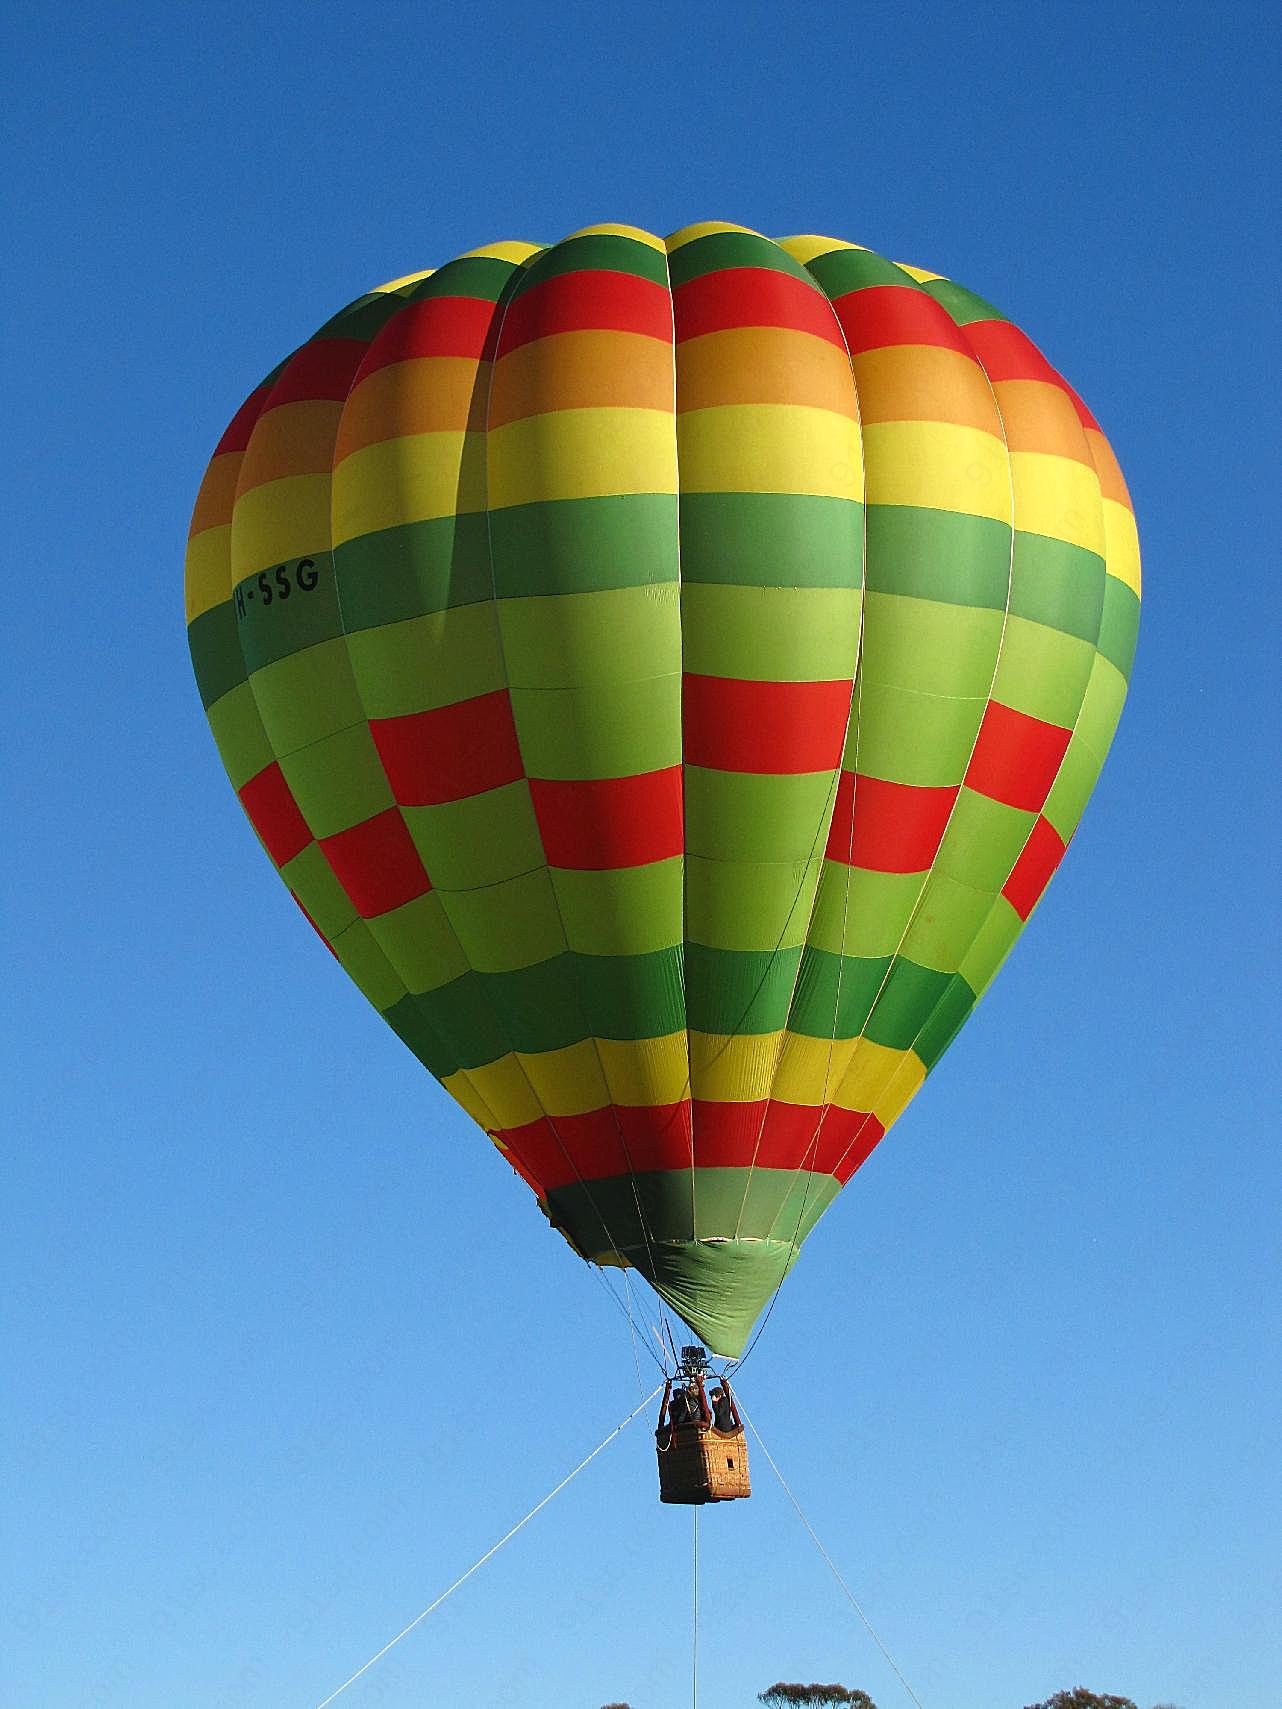 空中大型热气球图片高清摄影